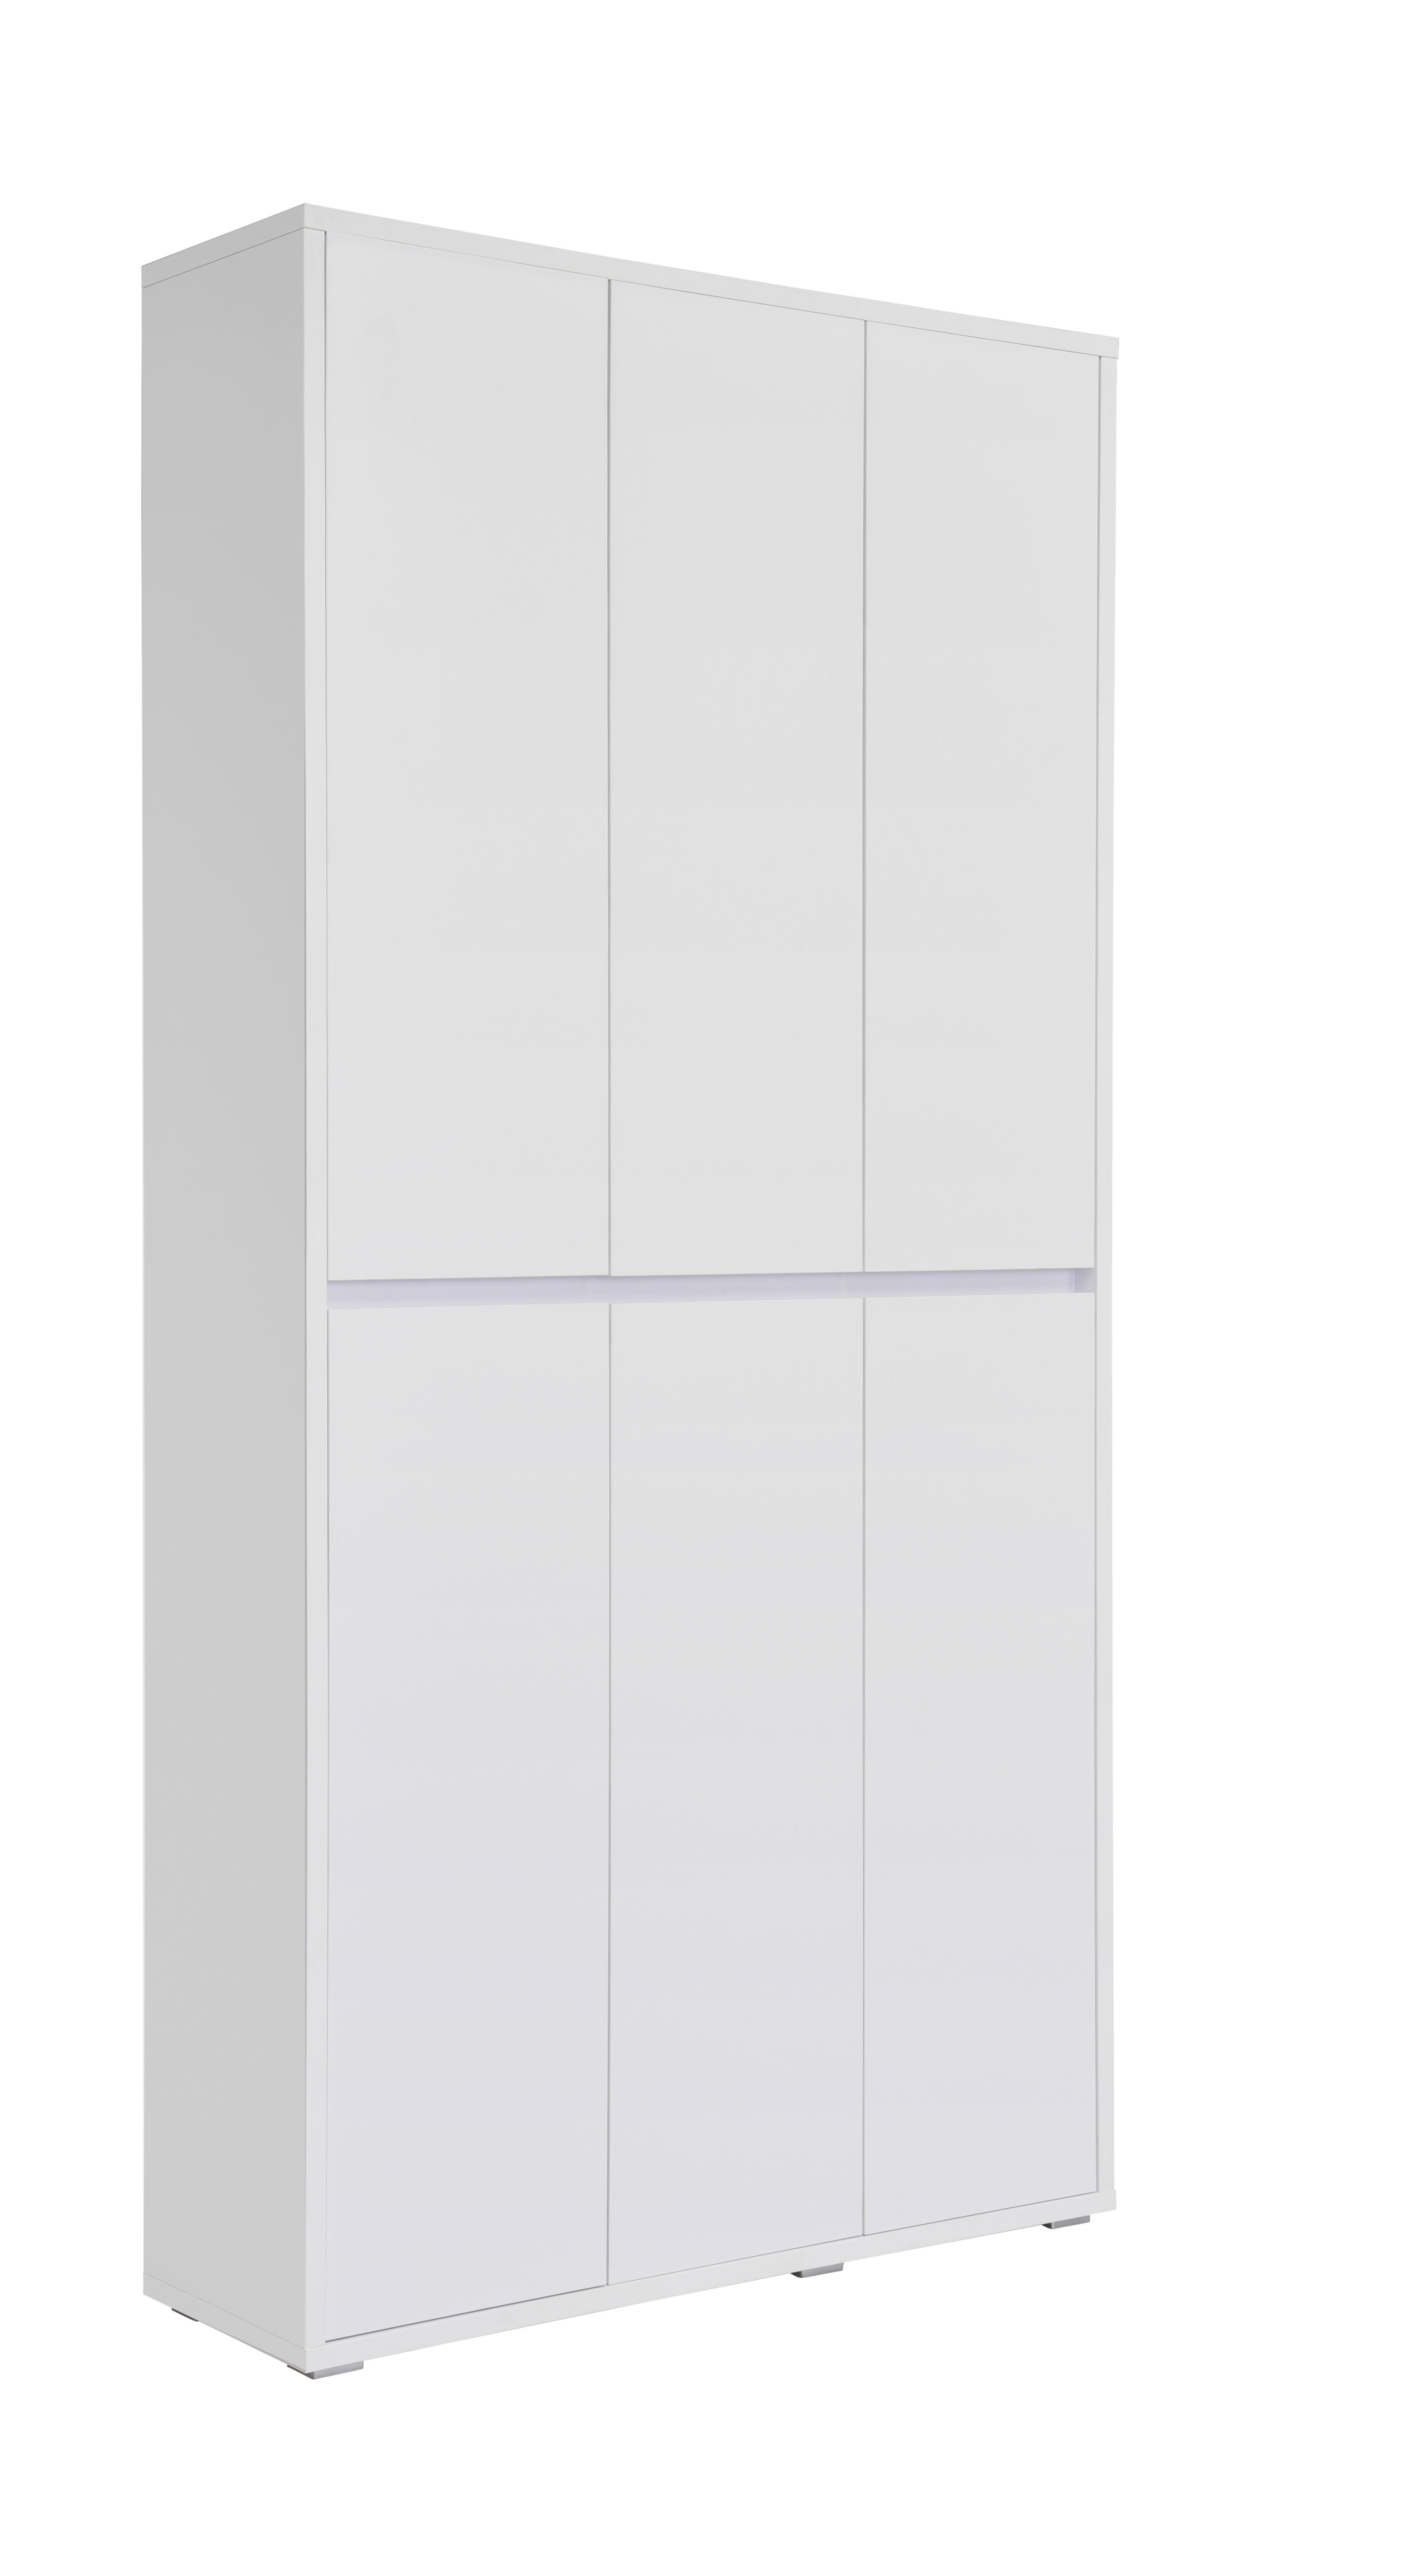 SKRINKA NA TOPÁNKY, biela, 100/210/34 cm - biela, Konventionell, kompozitné drevo (100/210/34cm) - Xora